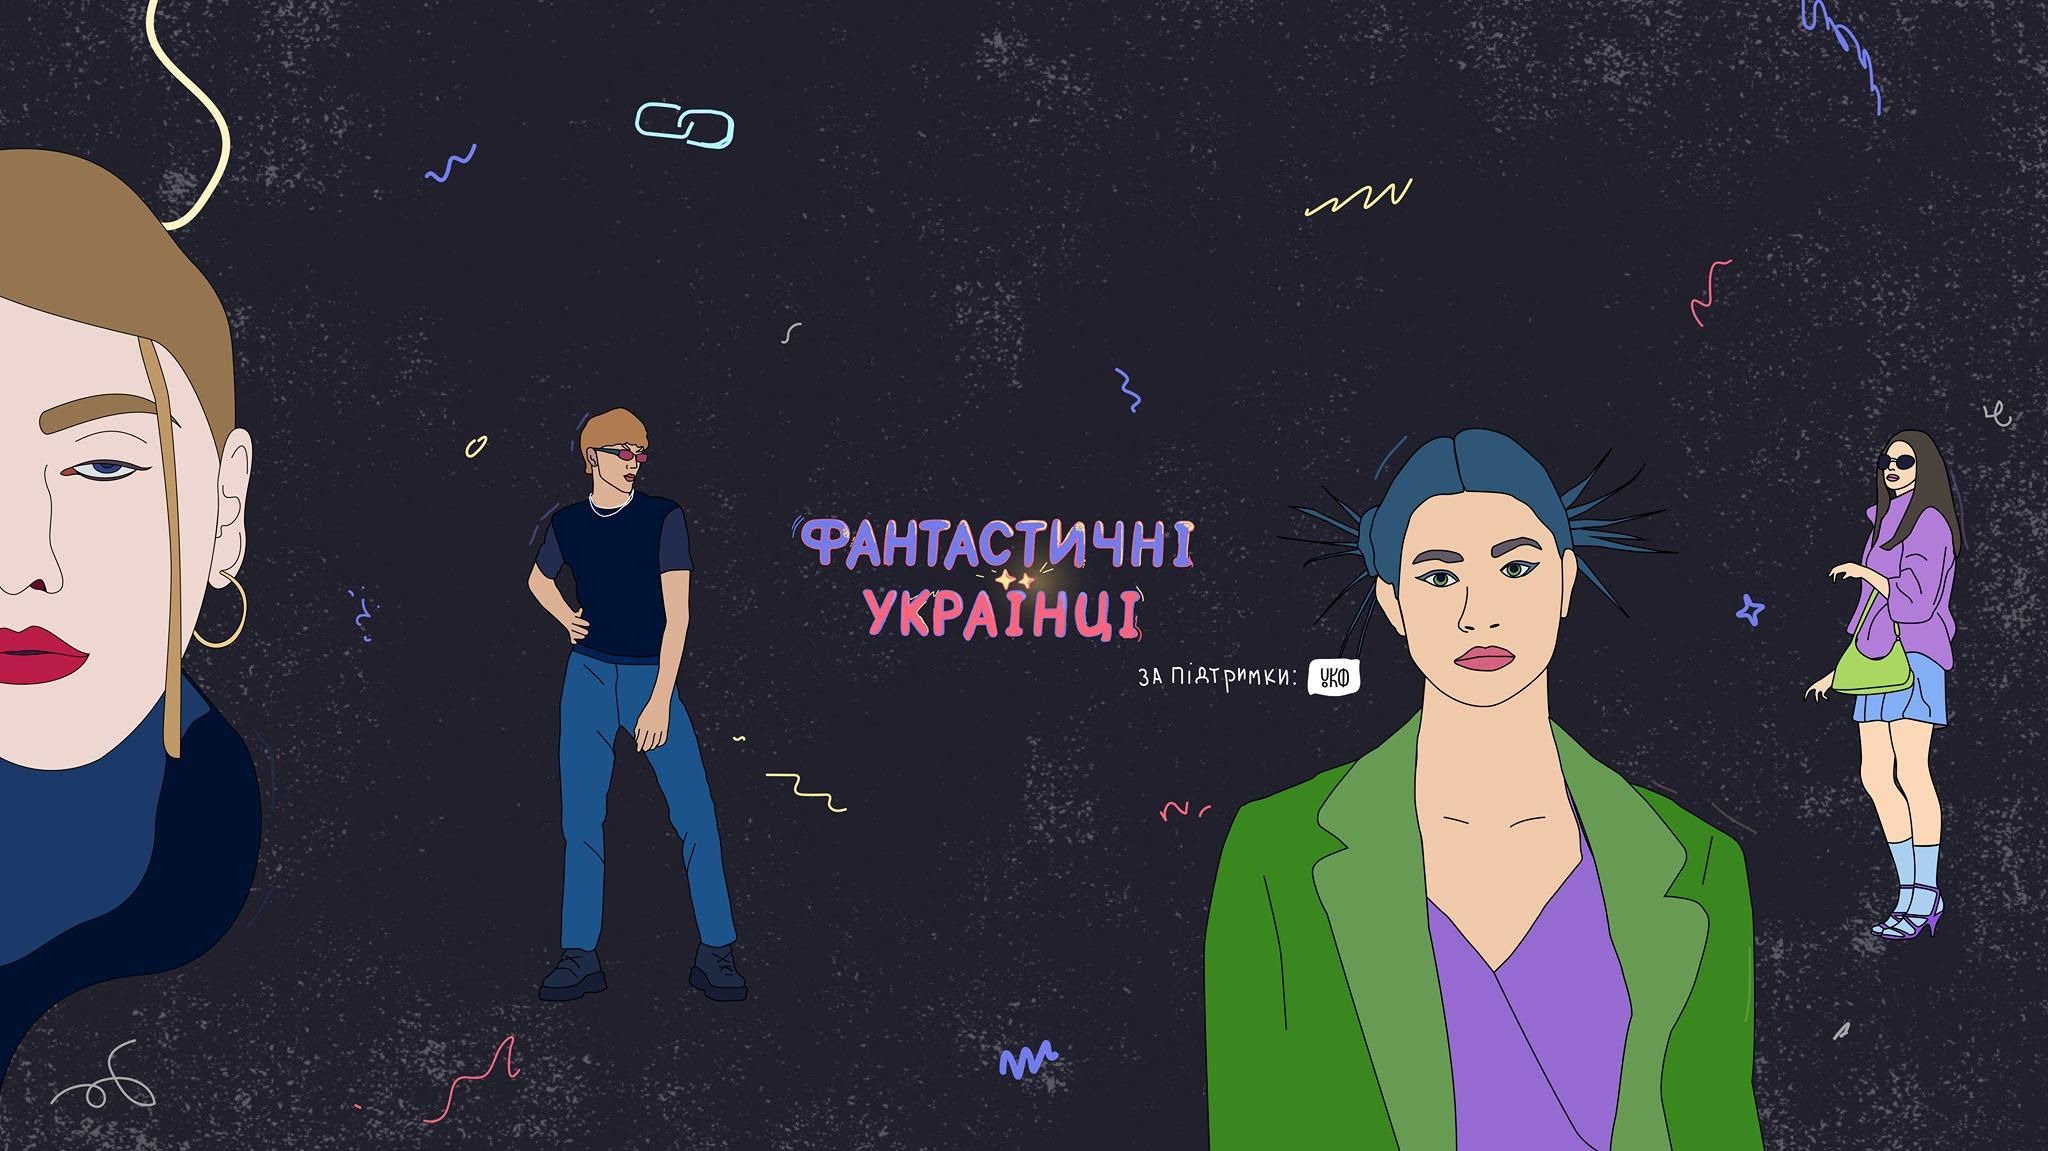 "Фантастические украинцы": на экраны выходит уникальный сериал о моде и танцах в Украине